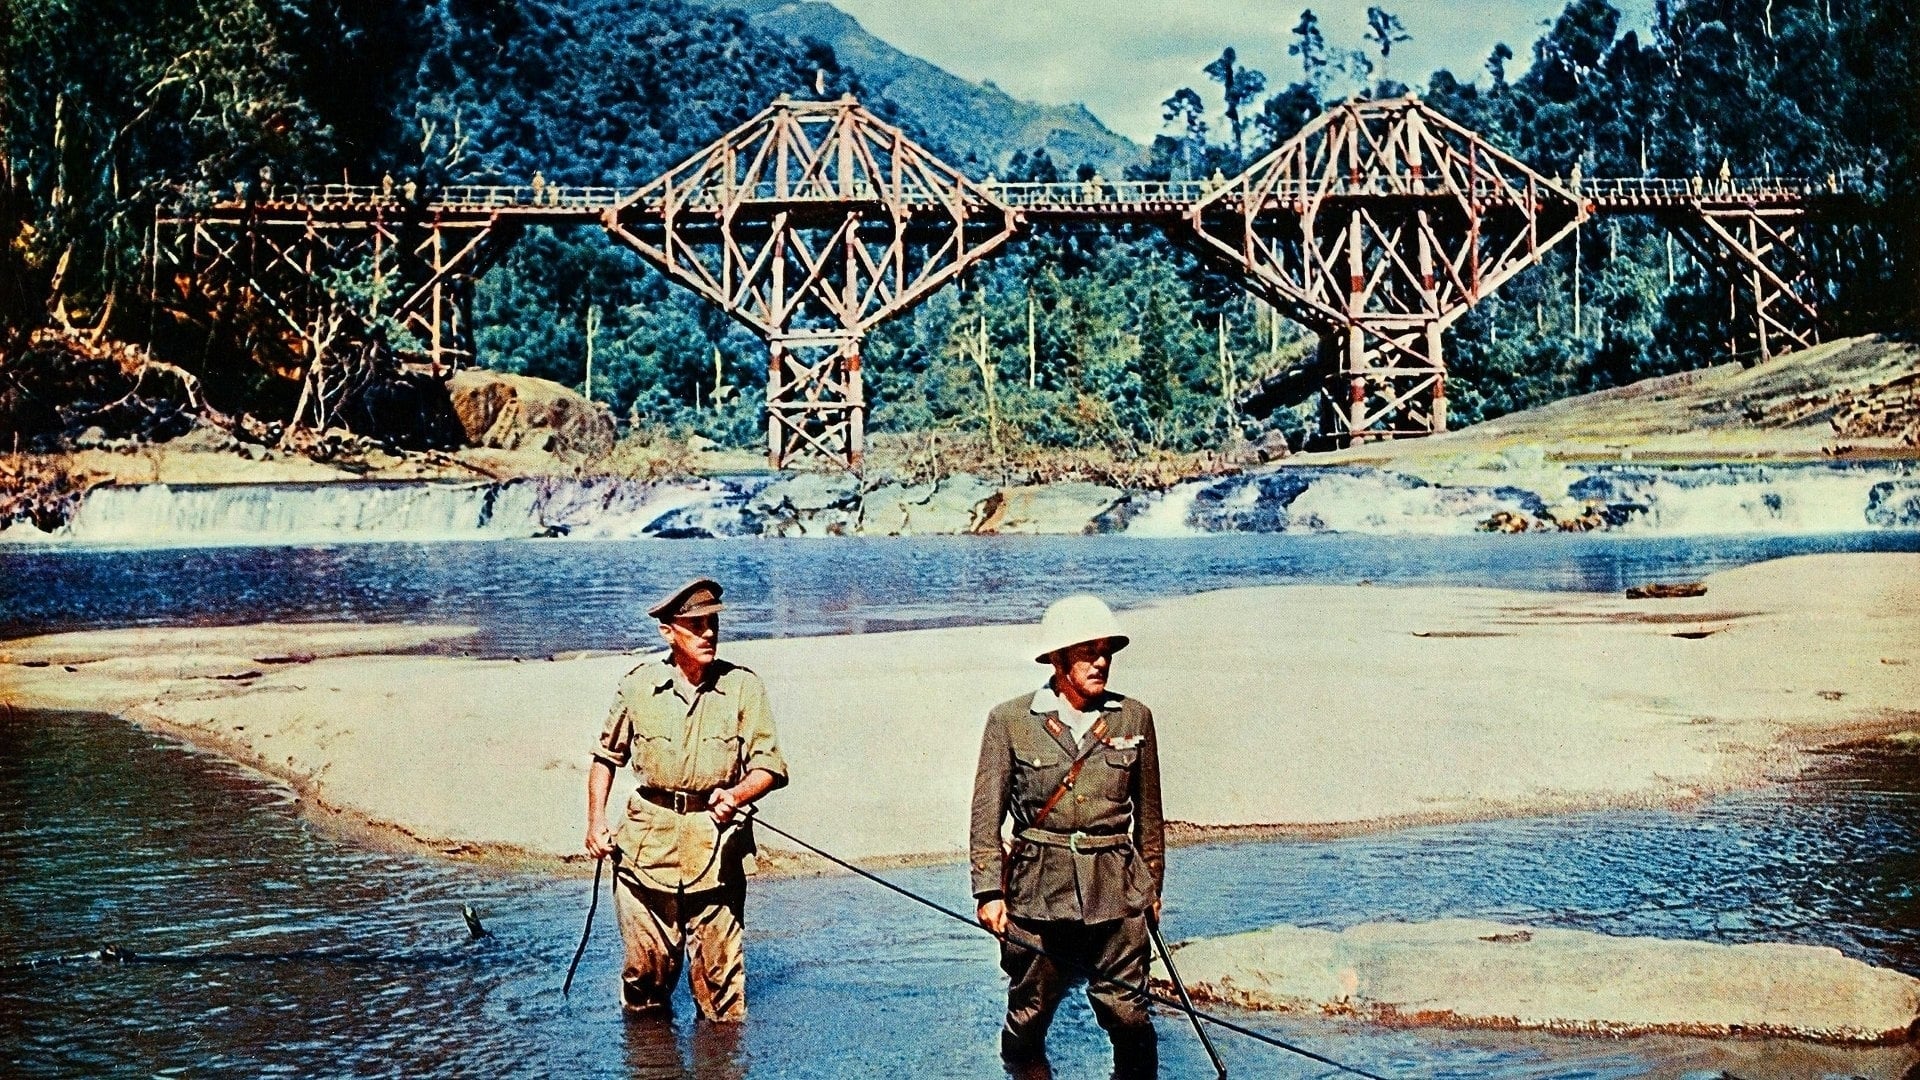 สะพานข้ามแม่น้ำแคว